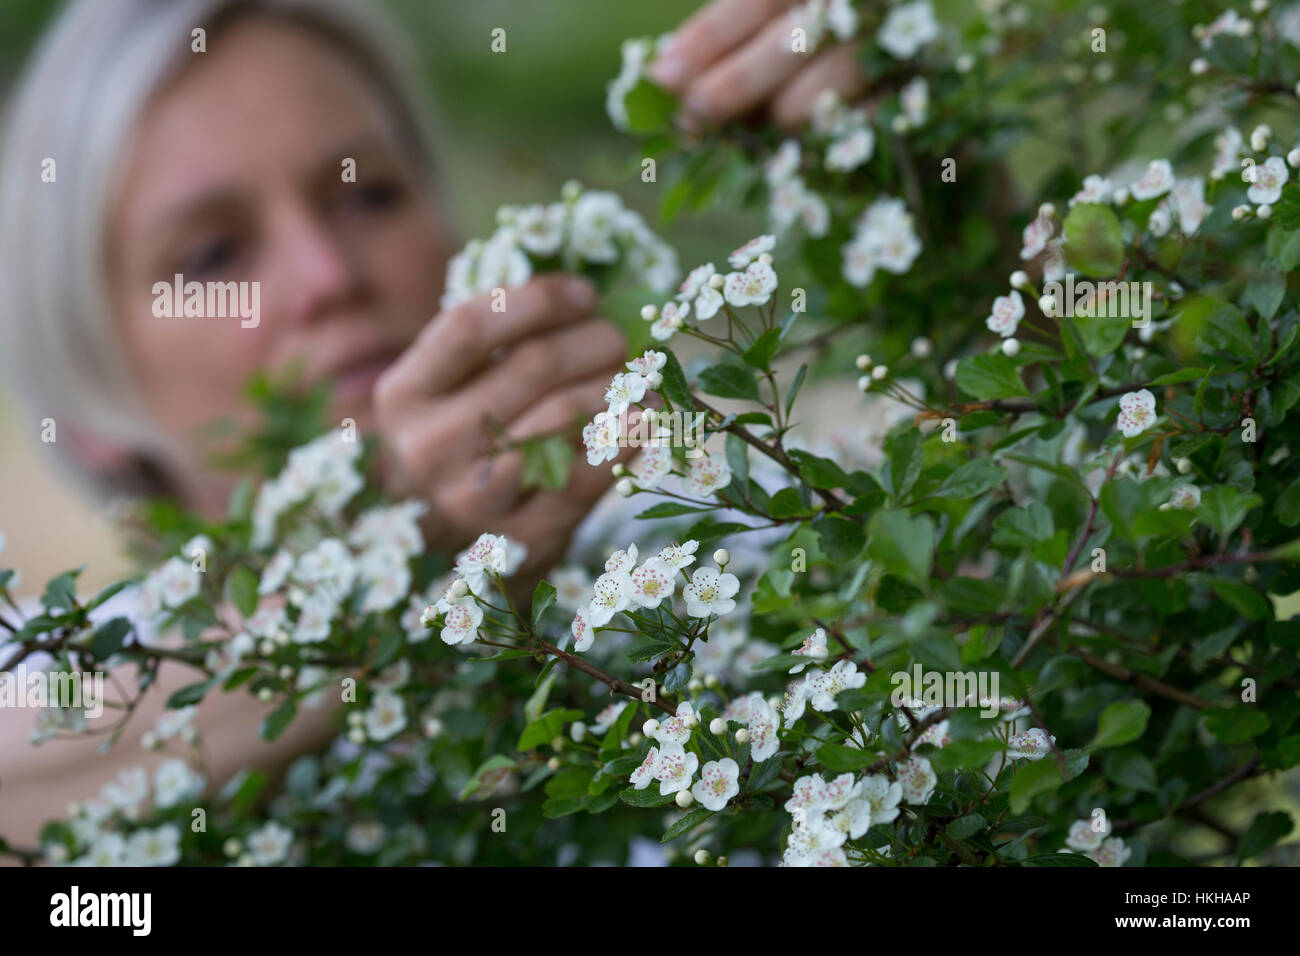 Weißdornblüten-Ernte, Blüten von Weißdorn sammeln, ernten, pfücken, Weißdorn-Eingriffliger Weißdorn, Blüten, Weissdorn, Weiß-Weiss-Dorn Crataeg, Dorn, Banque D'Images